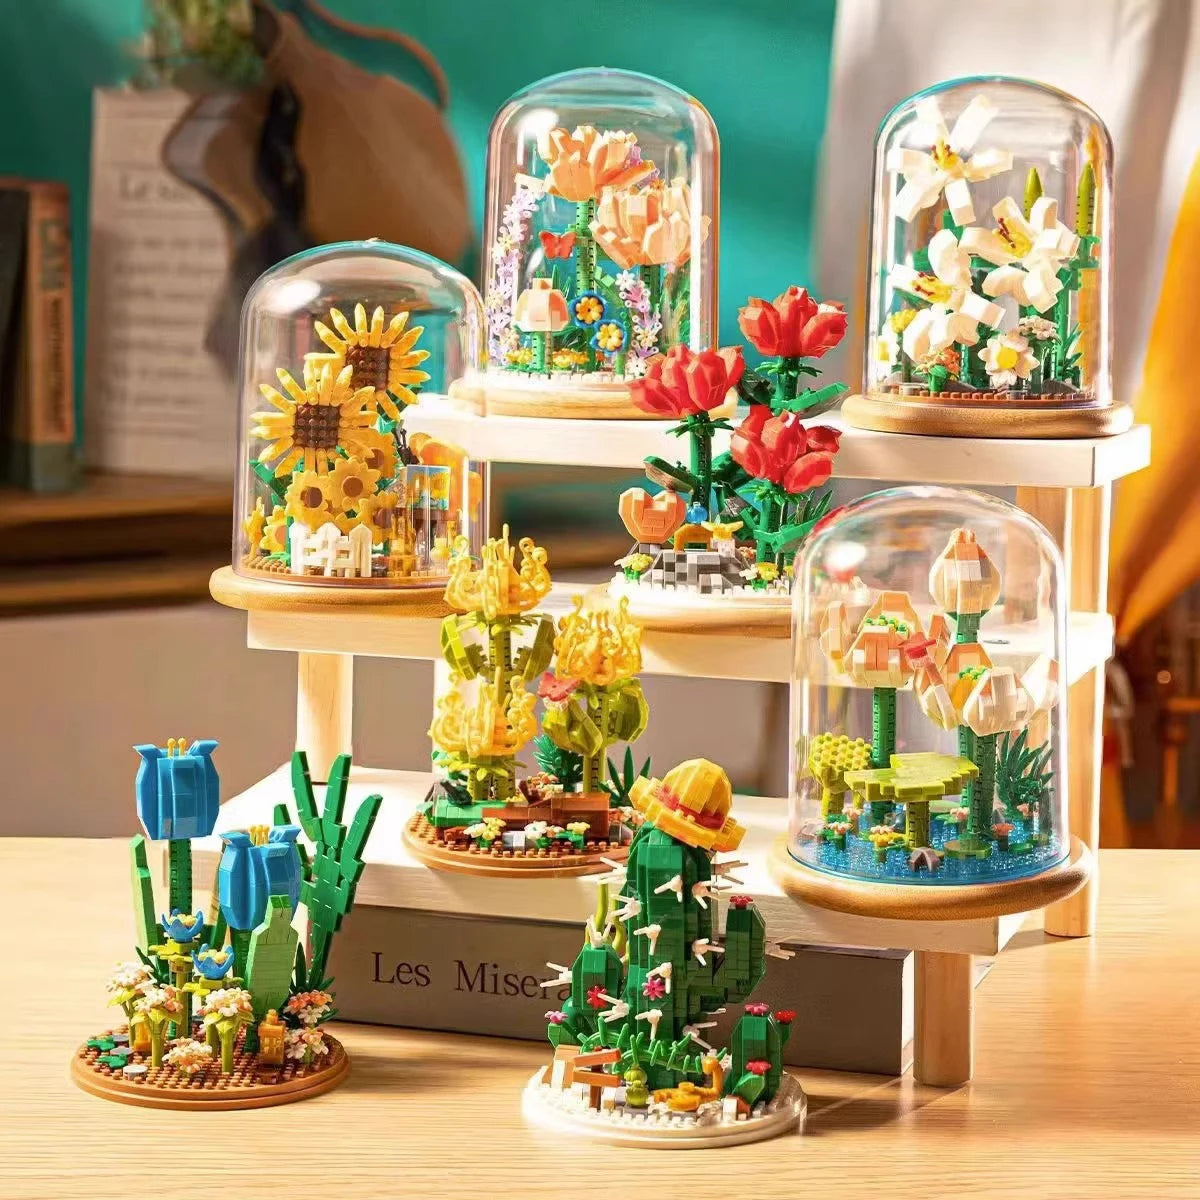 Eternal Block Flower Assembly Bouquet - Unique Desktop Decoration Toy for Children's Puzzle Fun